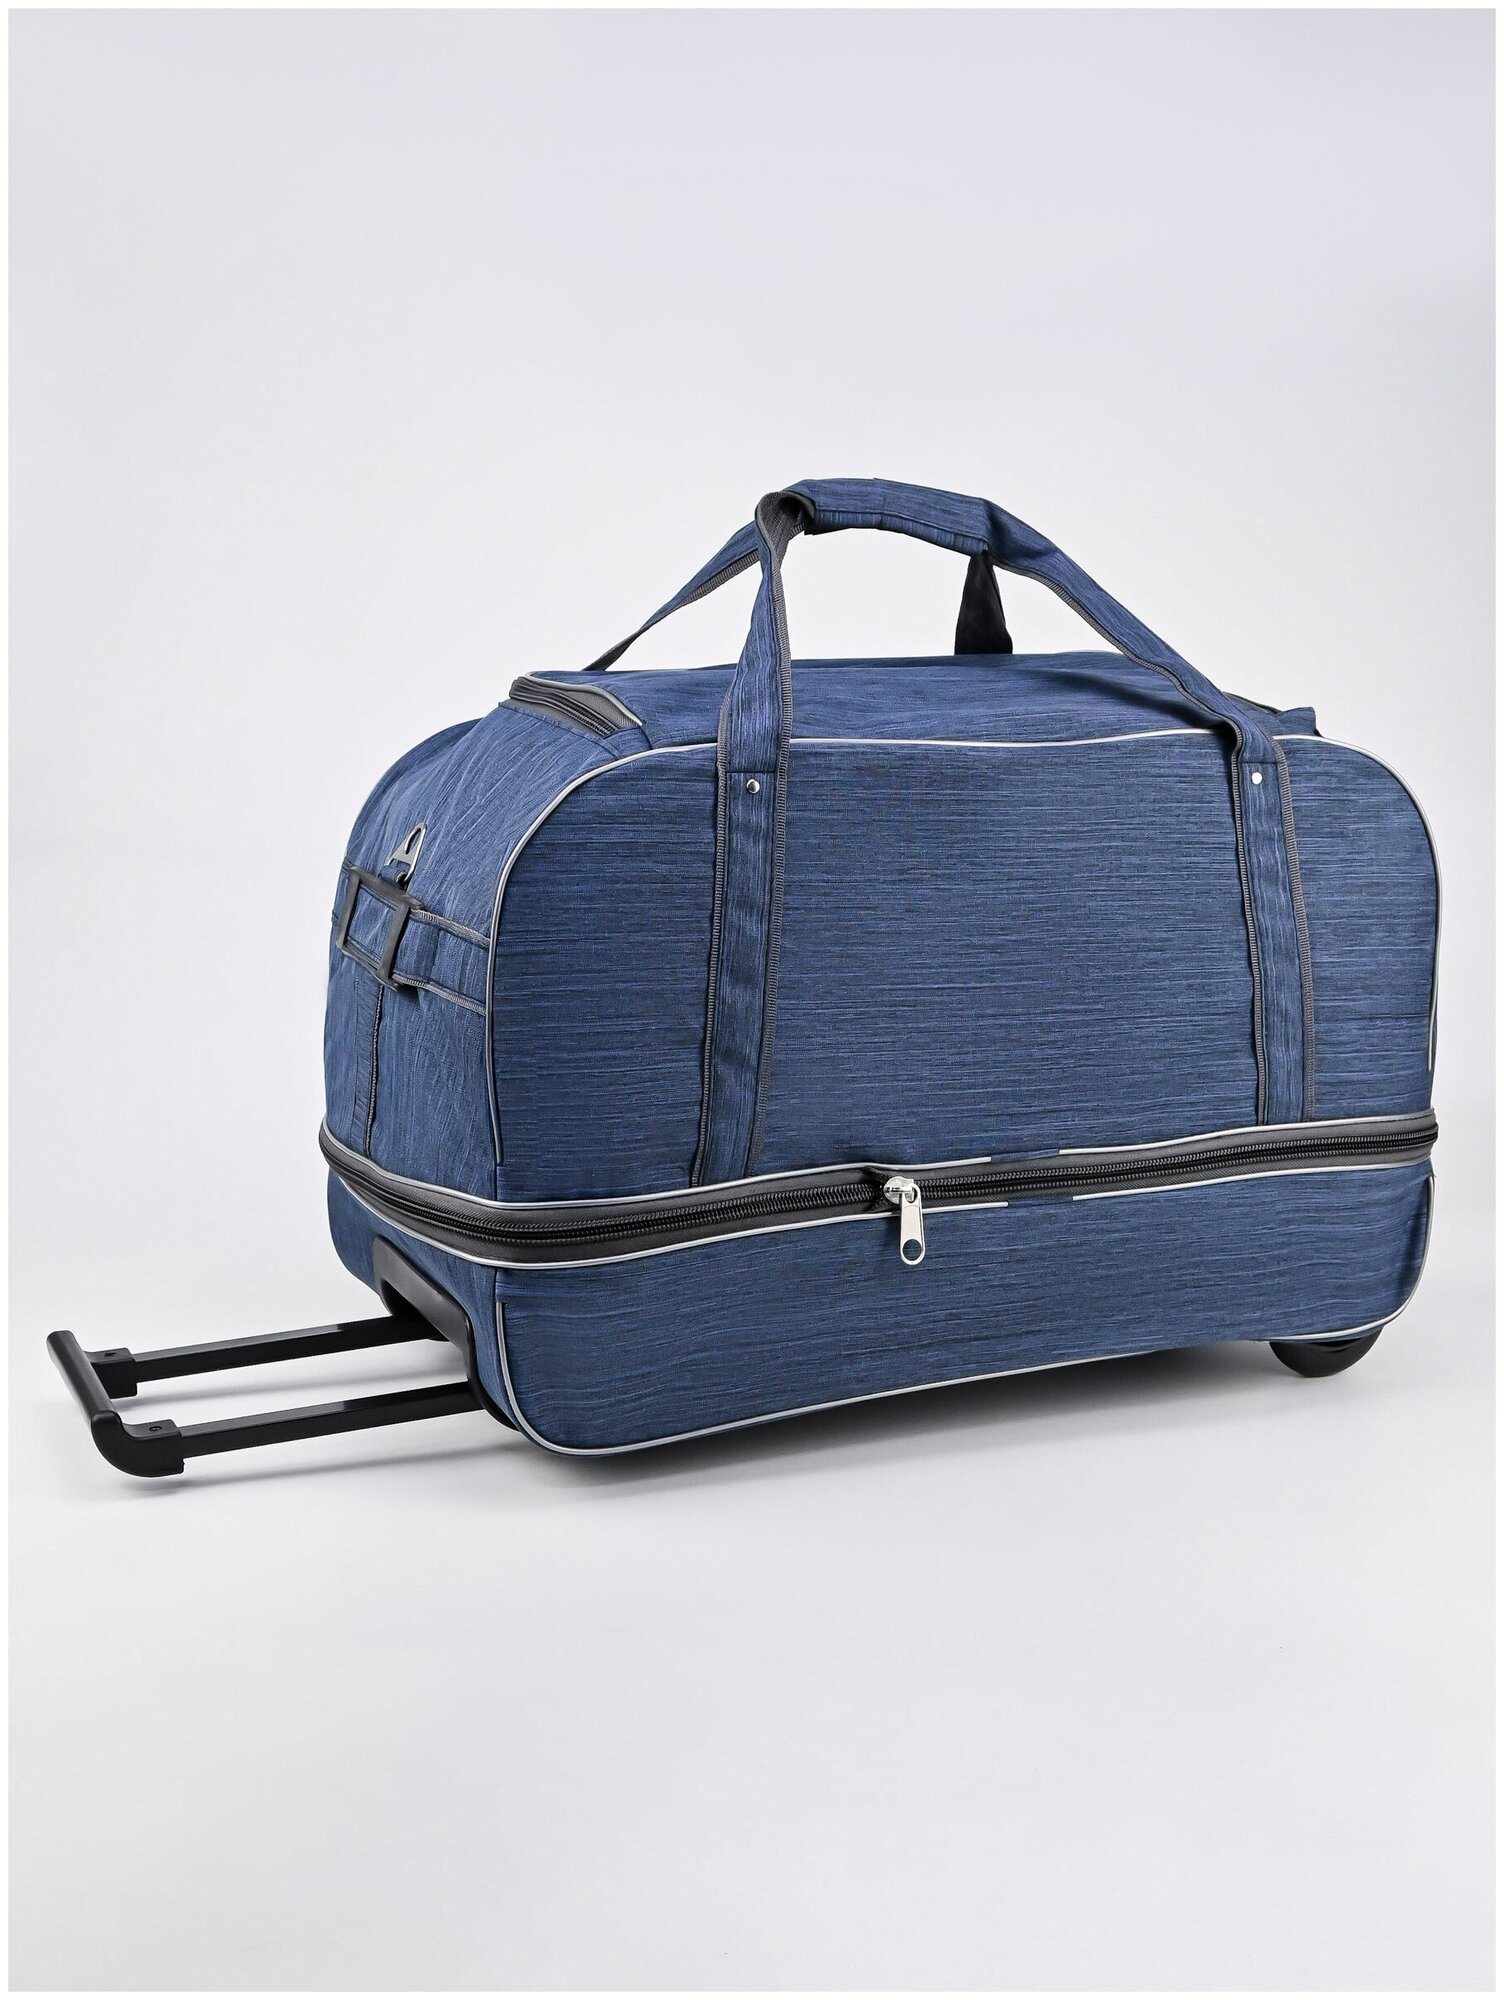 Дорожная сумка на колесах c раздвижкой, чемодан тележка для путешествий, мужская женская - фотография № 10